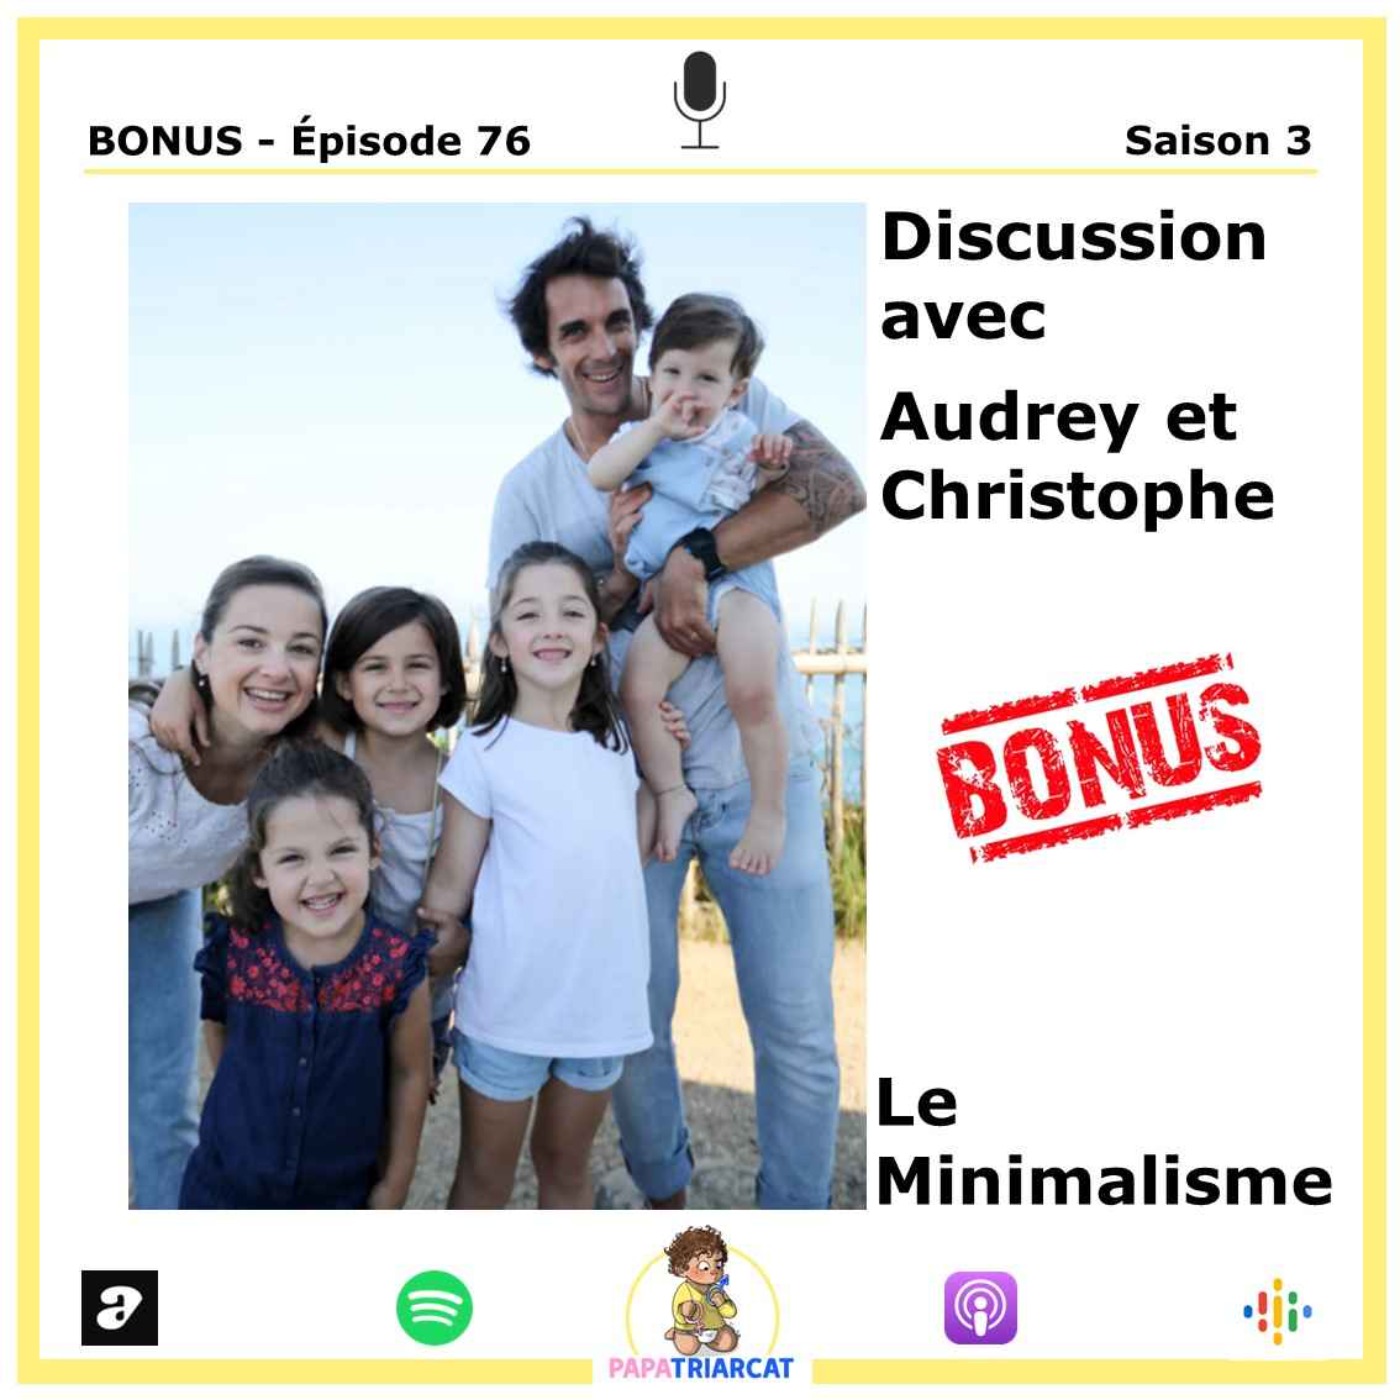 DECOUVERTE BONUS #76 - Les minimalisme - Discussion avec Audrey et Christophe